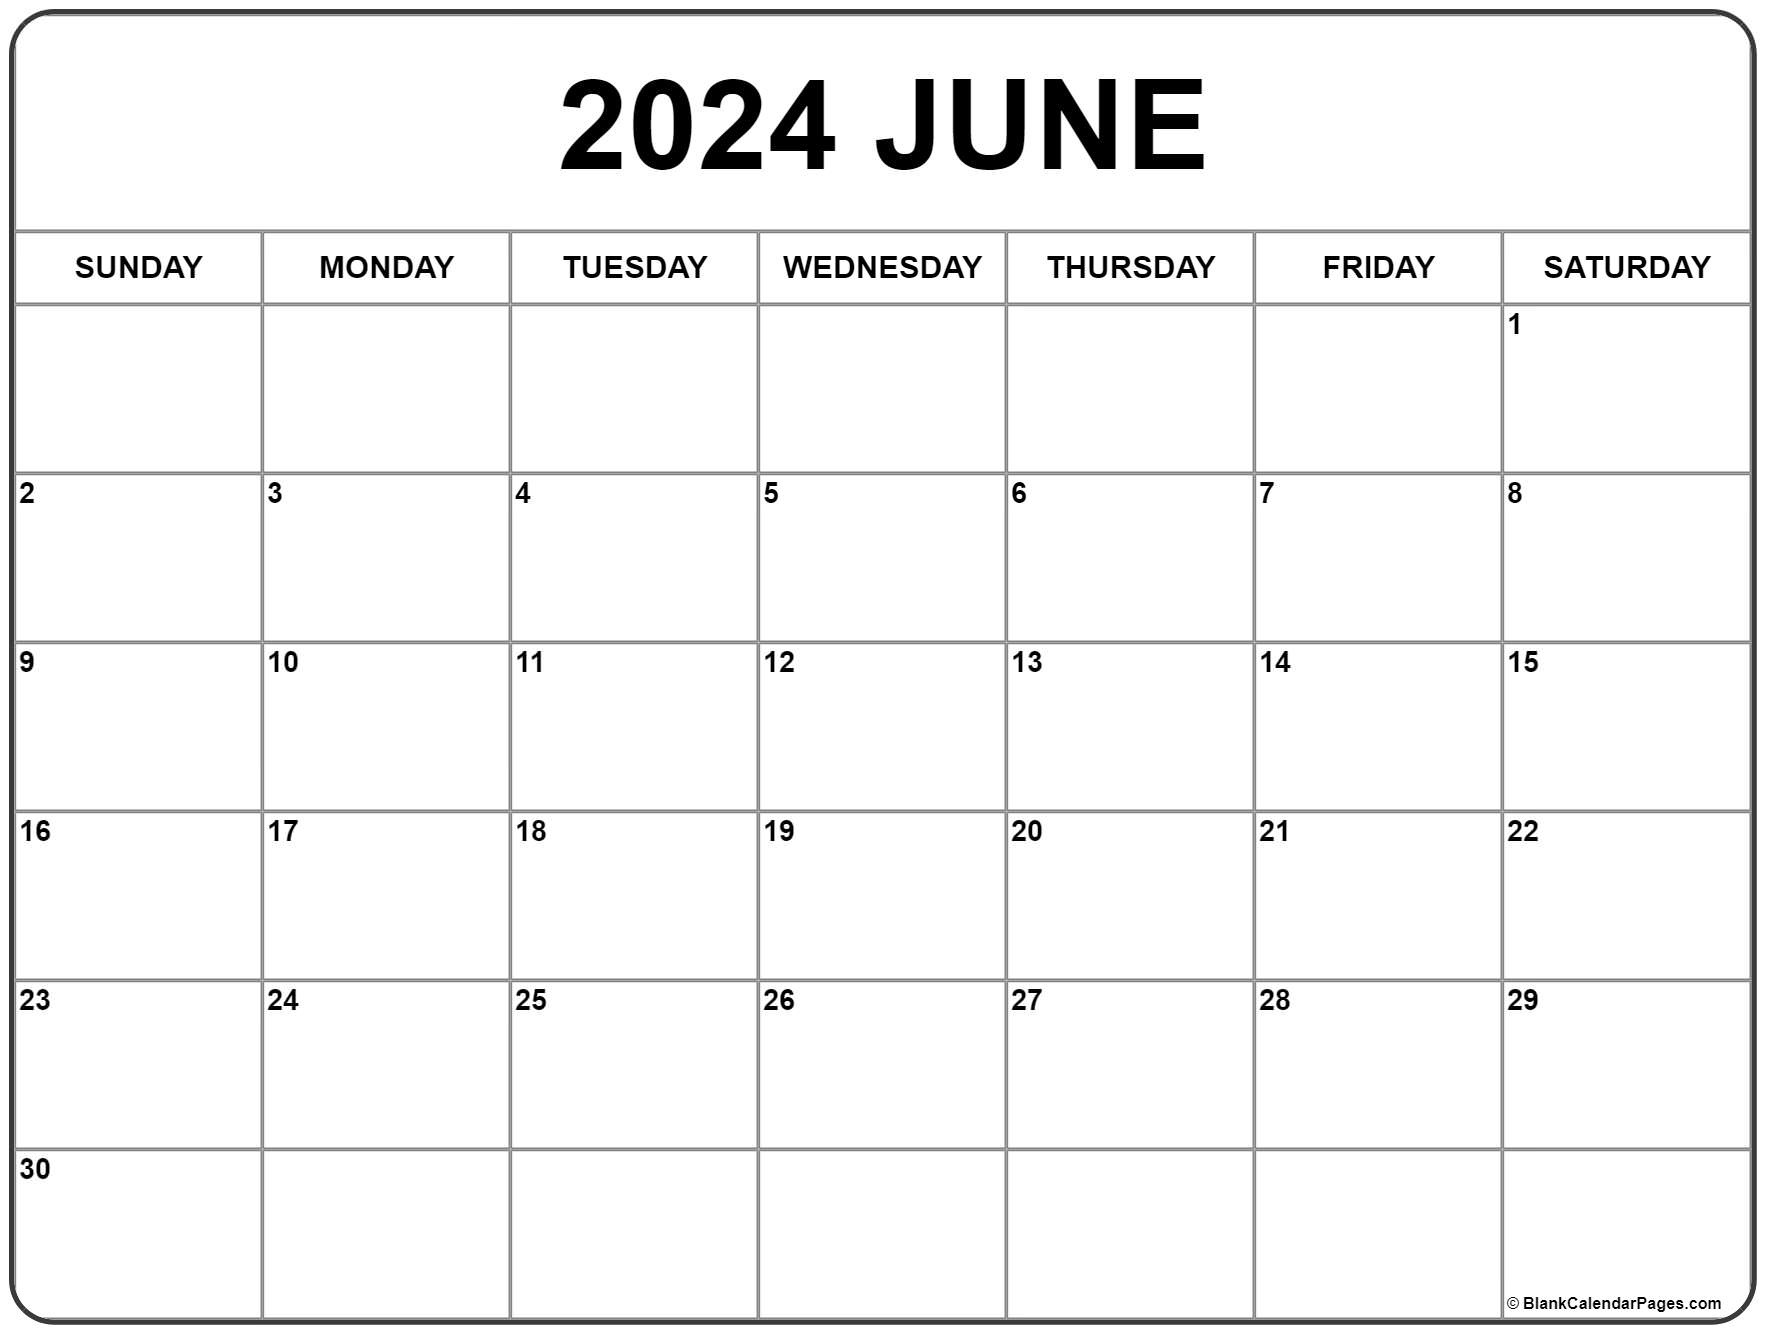 June 2024 Calendar | Free Printable Calendar regarding Show Me Calendar For June 2024